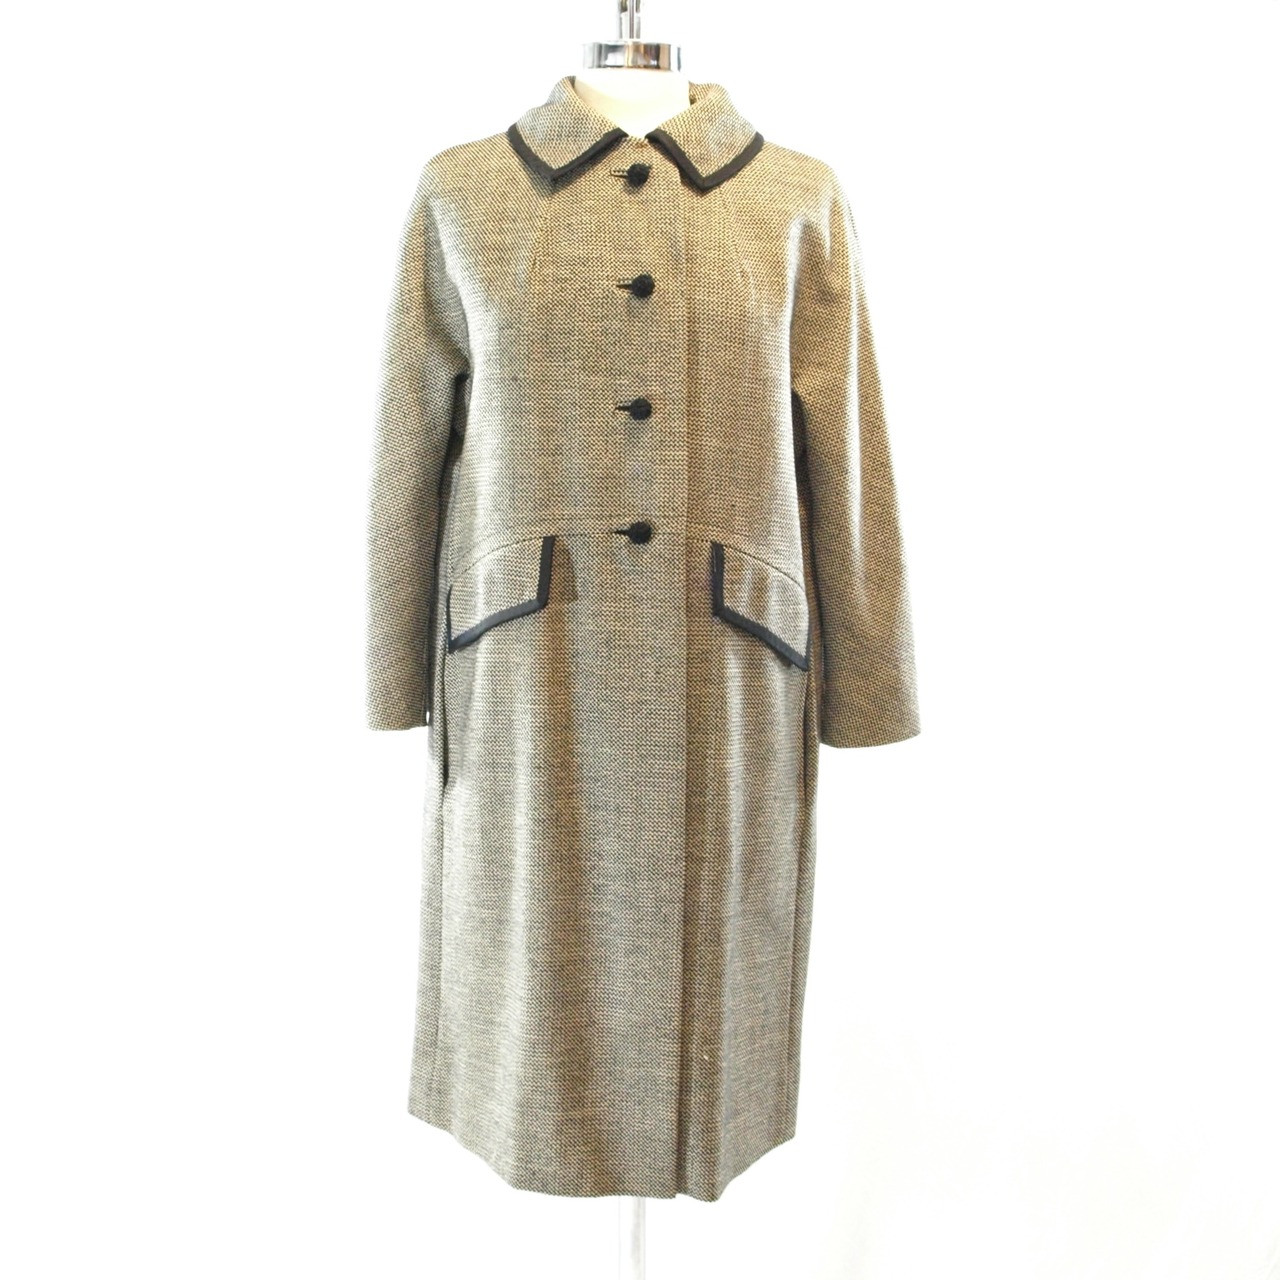 Vintage Coats | 1960s Tweed Coat